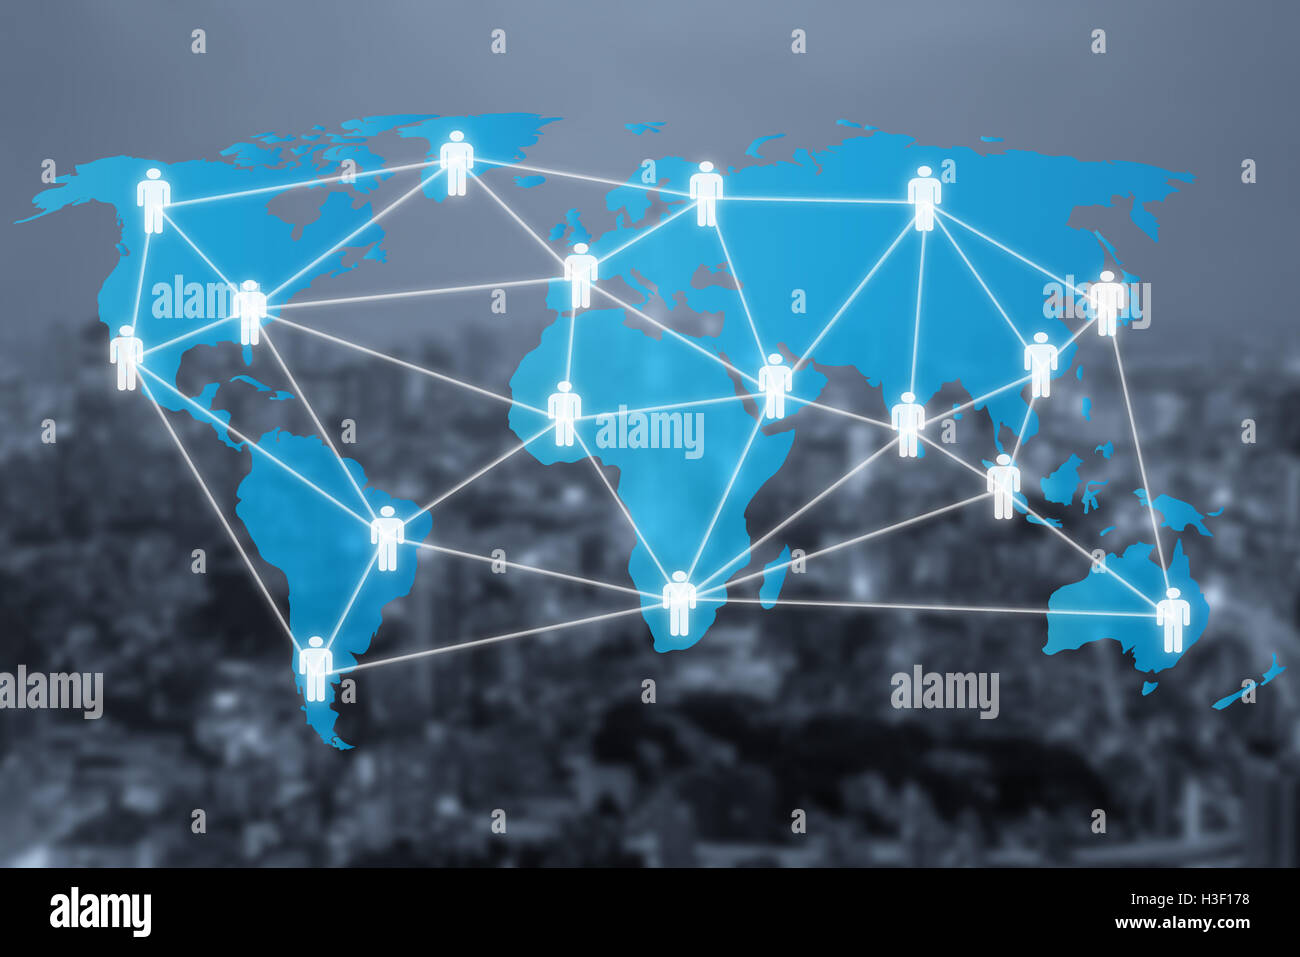 Réseau social à l'échelle mondiale en matière de gestion des personnes ou le schéma de connexion des icônes avec une carte de connexion. Connexions réseau concept Banque D'Images